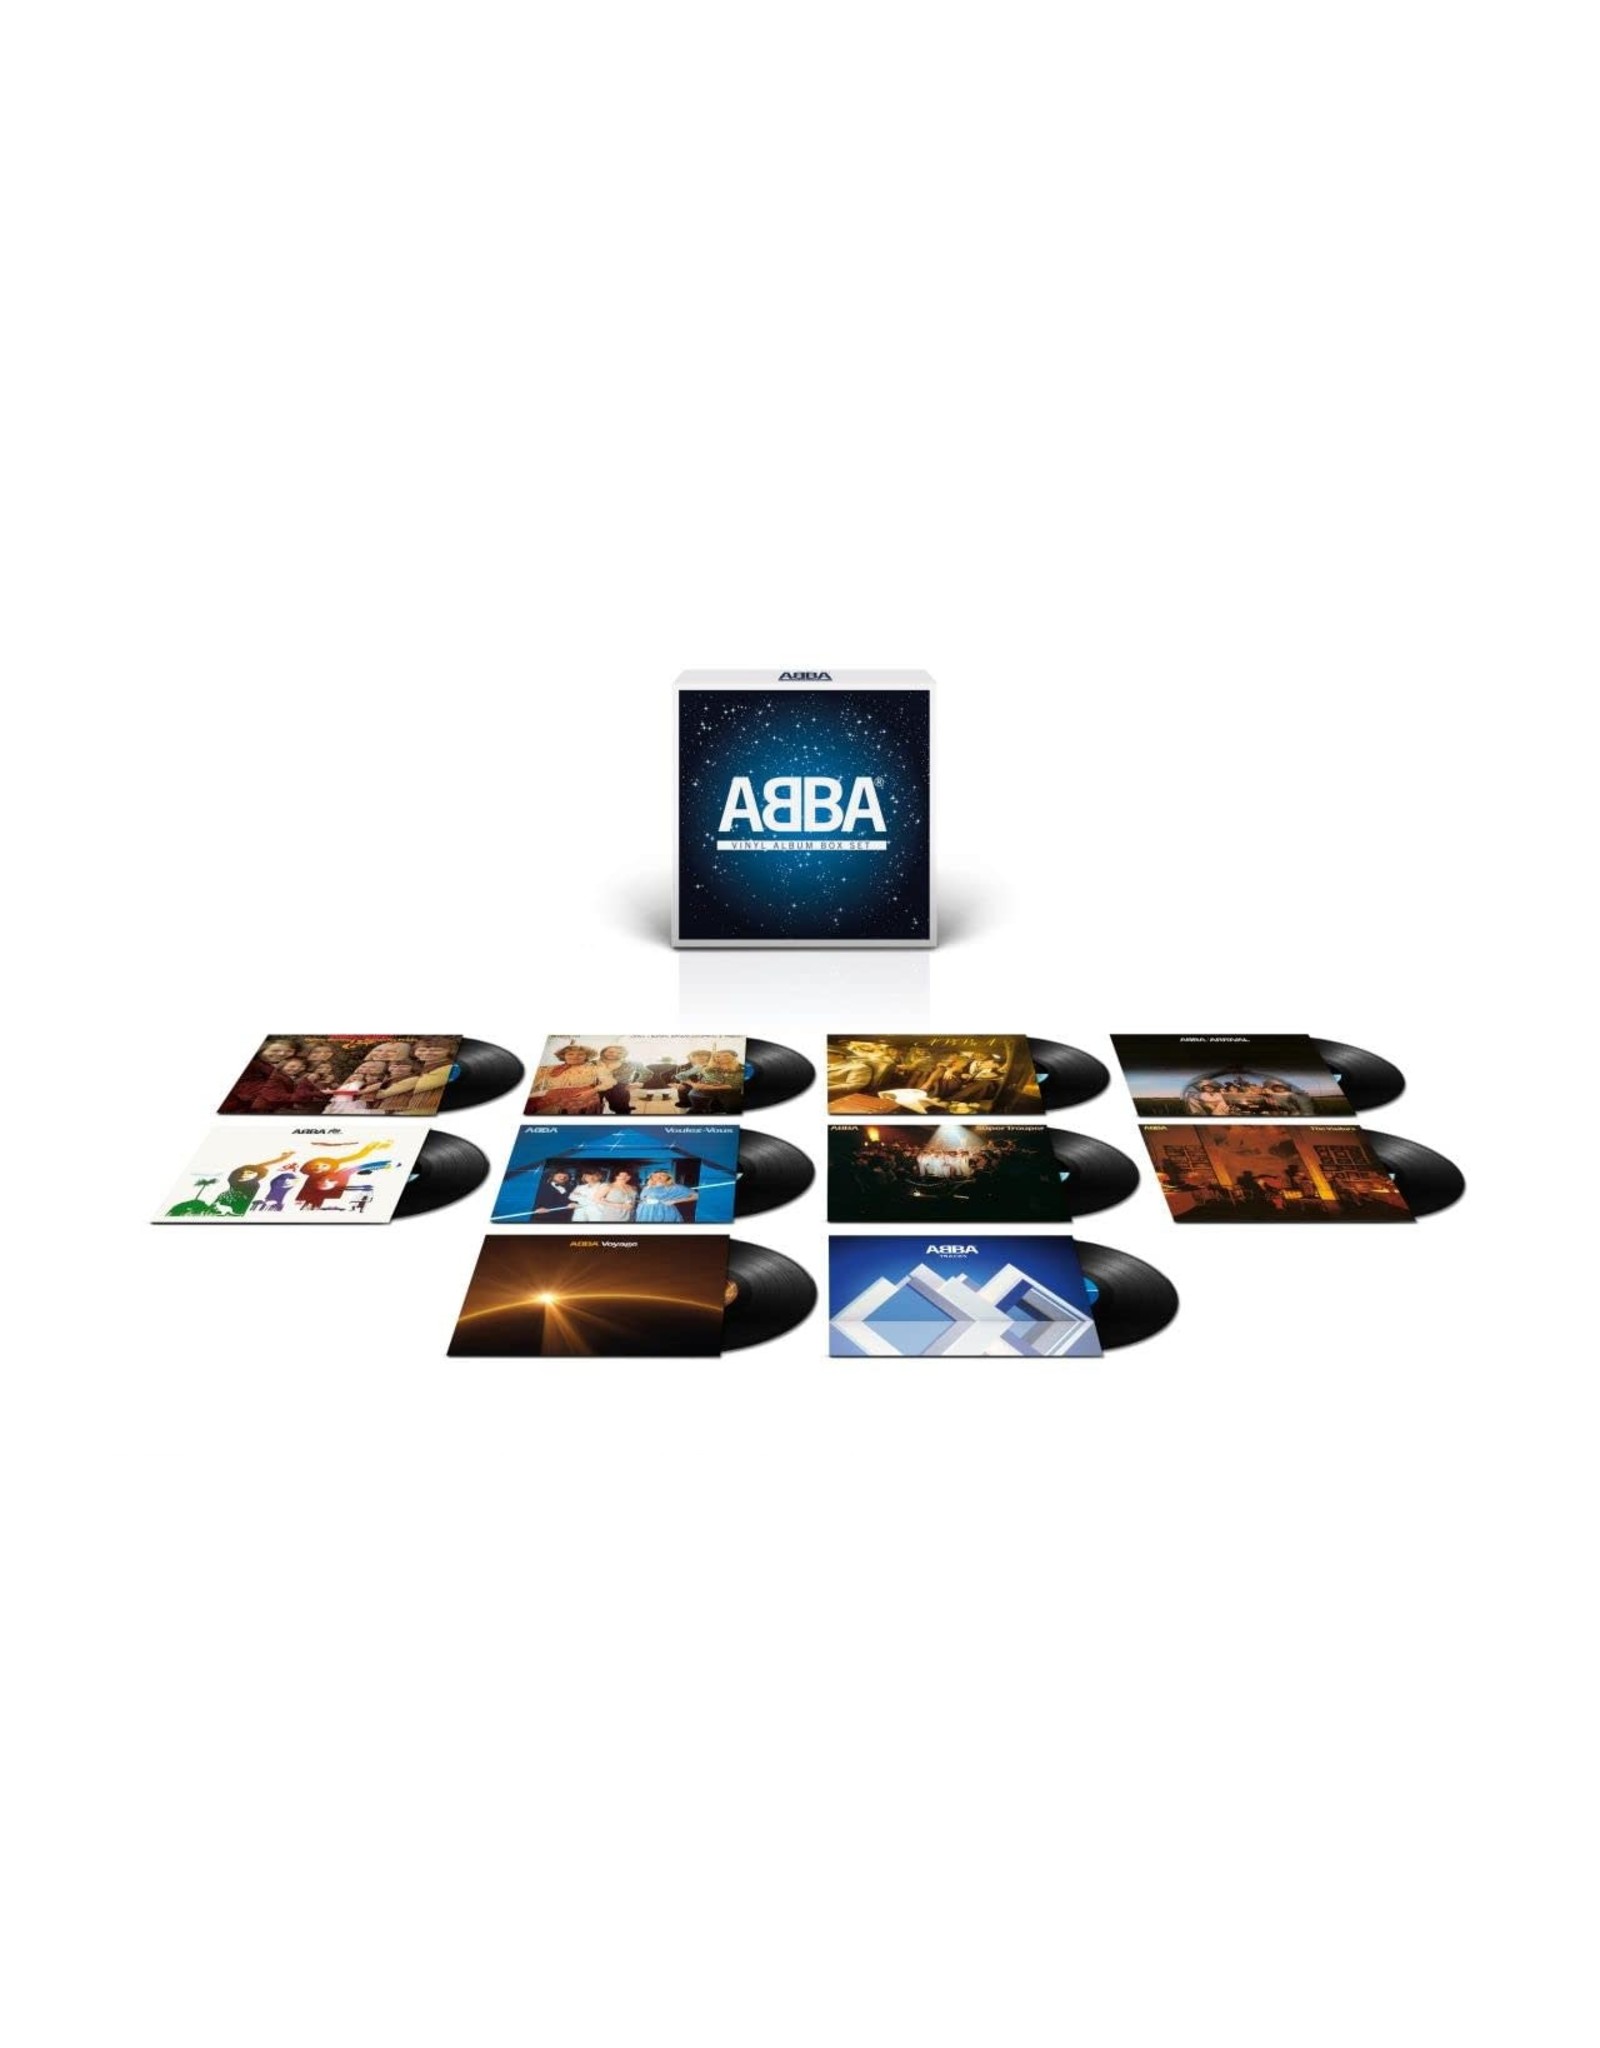 Abba - Vinyl Album Box Set LP